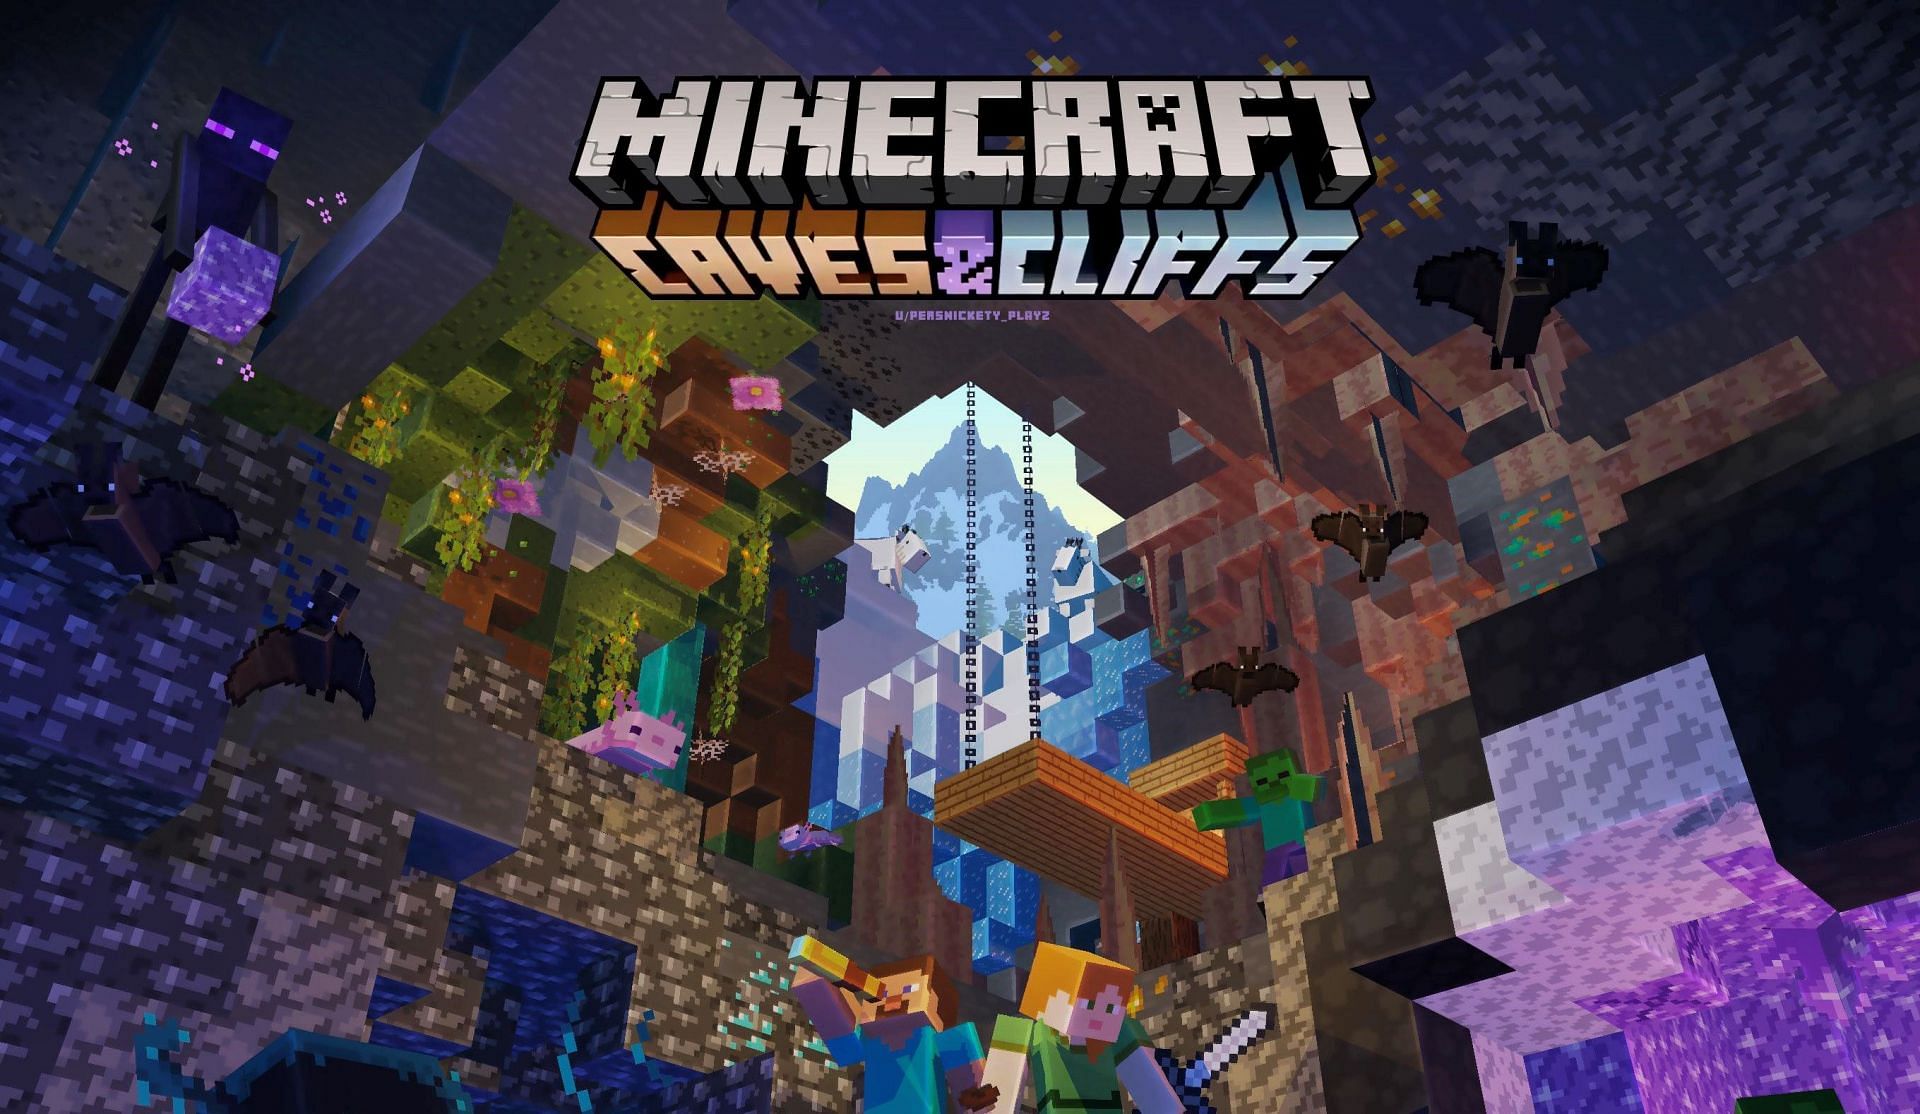 Minecraft Caves & Cliffs Update: Part II trailer 